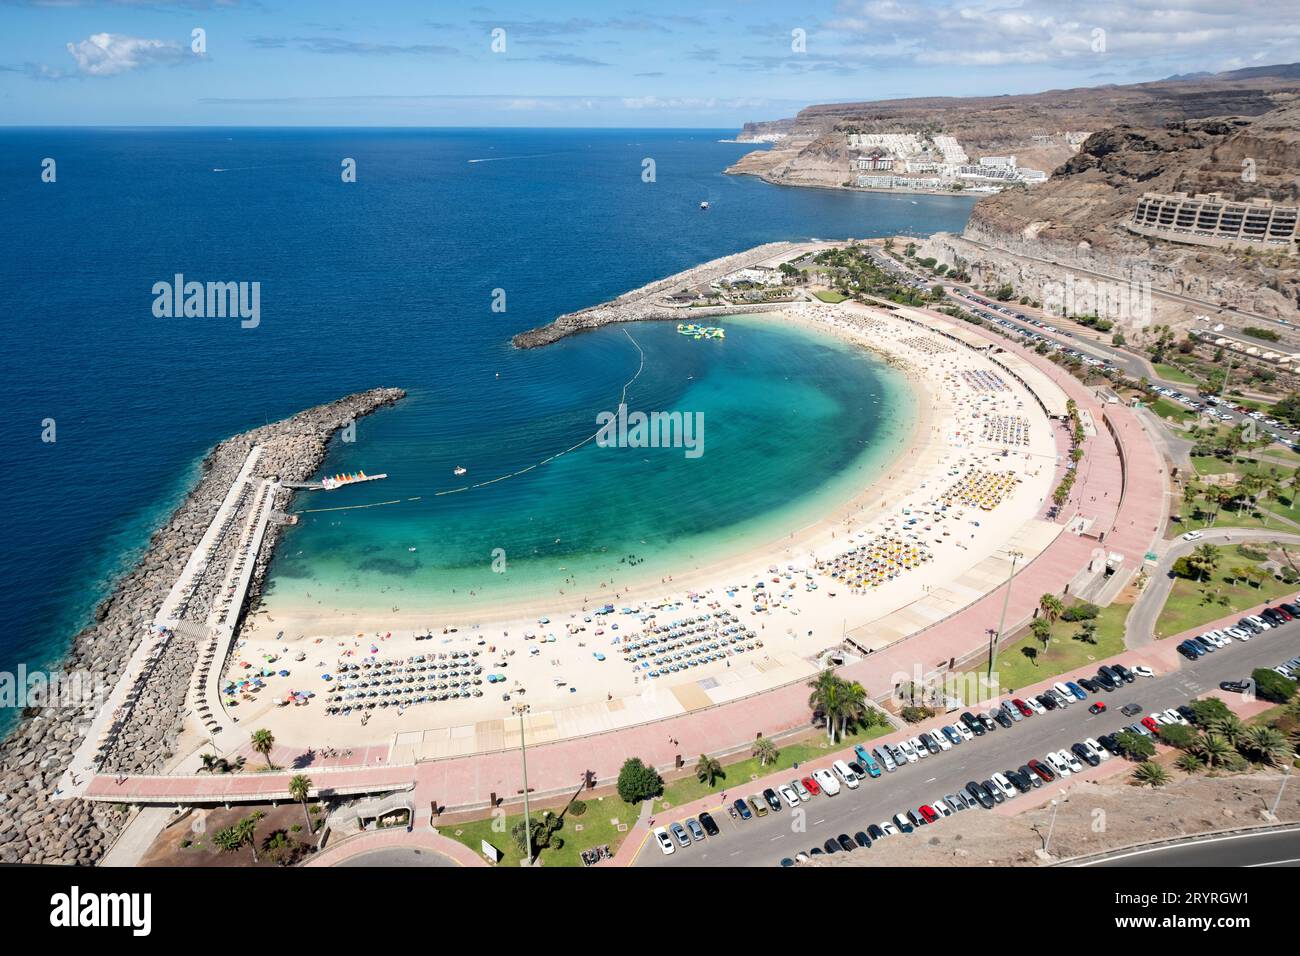 Ein großer Blick von oben auf den Strand und die Bucht des Strandes und des Meeres bei Amadores, lokal bekannt als Playa de Amadores Stockfoto